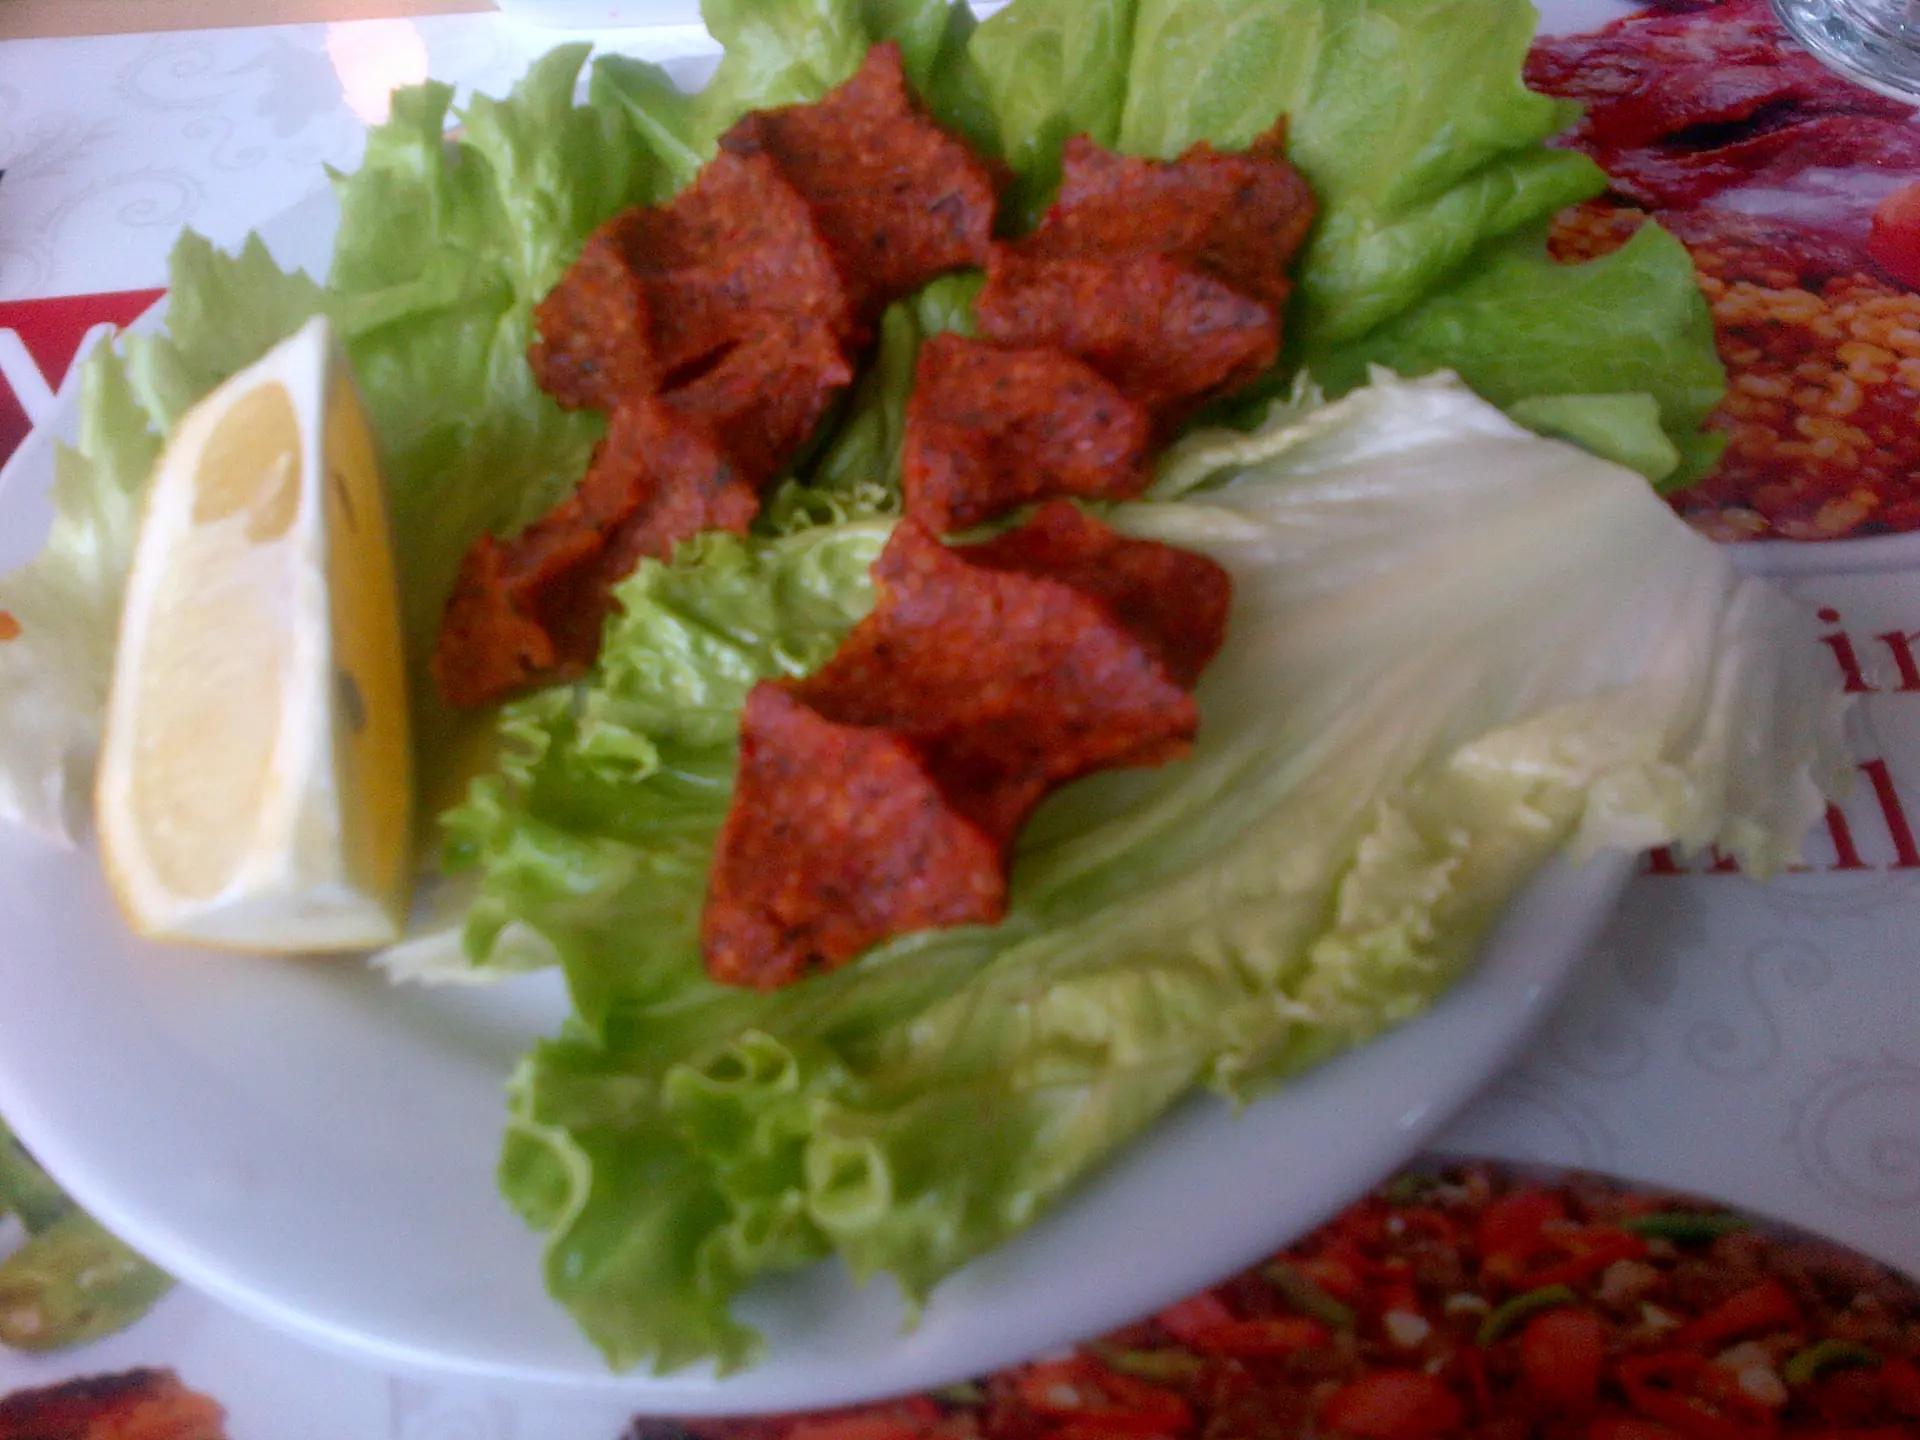 Un plat de çig köfte, des boulettes de roses-rouges pressées à la main et disposée sur une assiette avec un peu de citron.